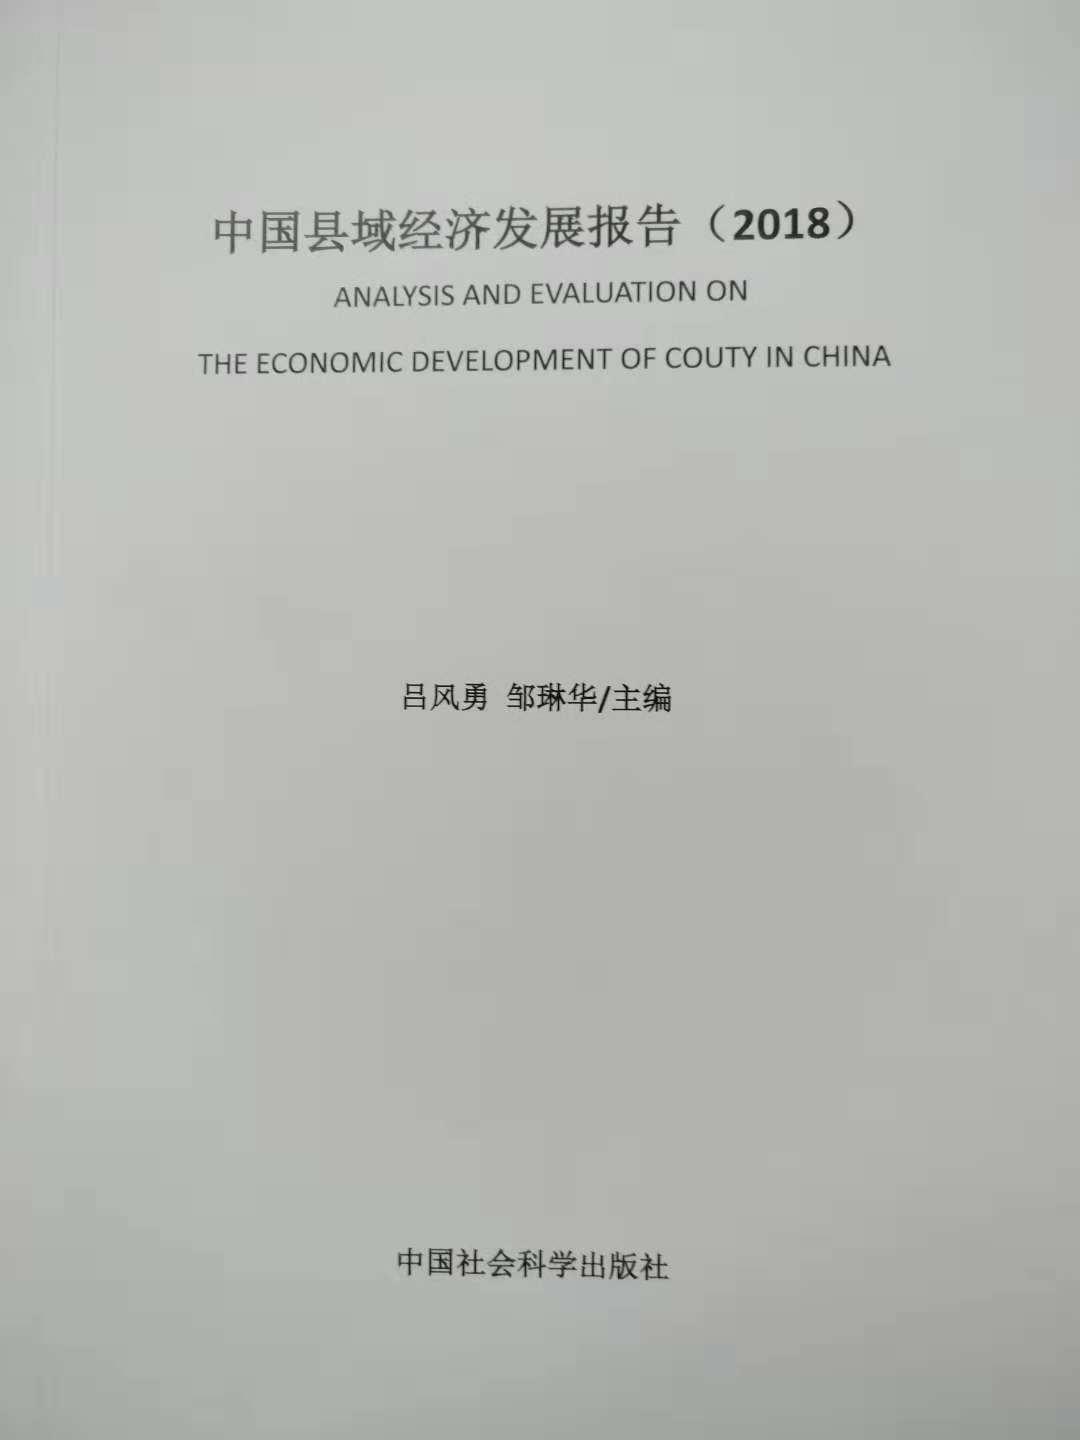 中國縣域經濟發展報告(2018)